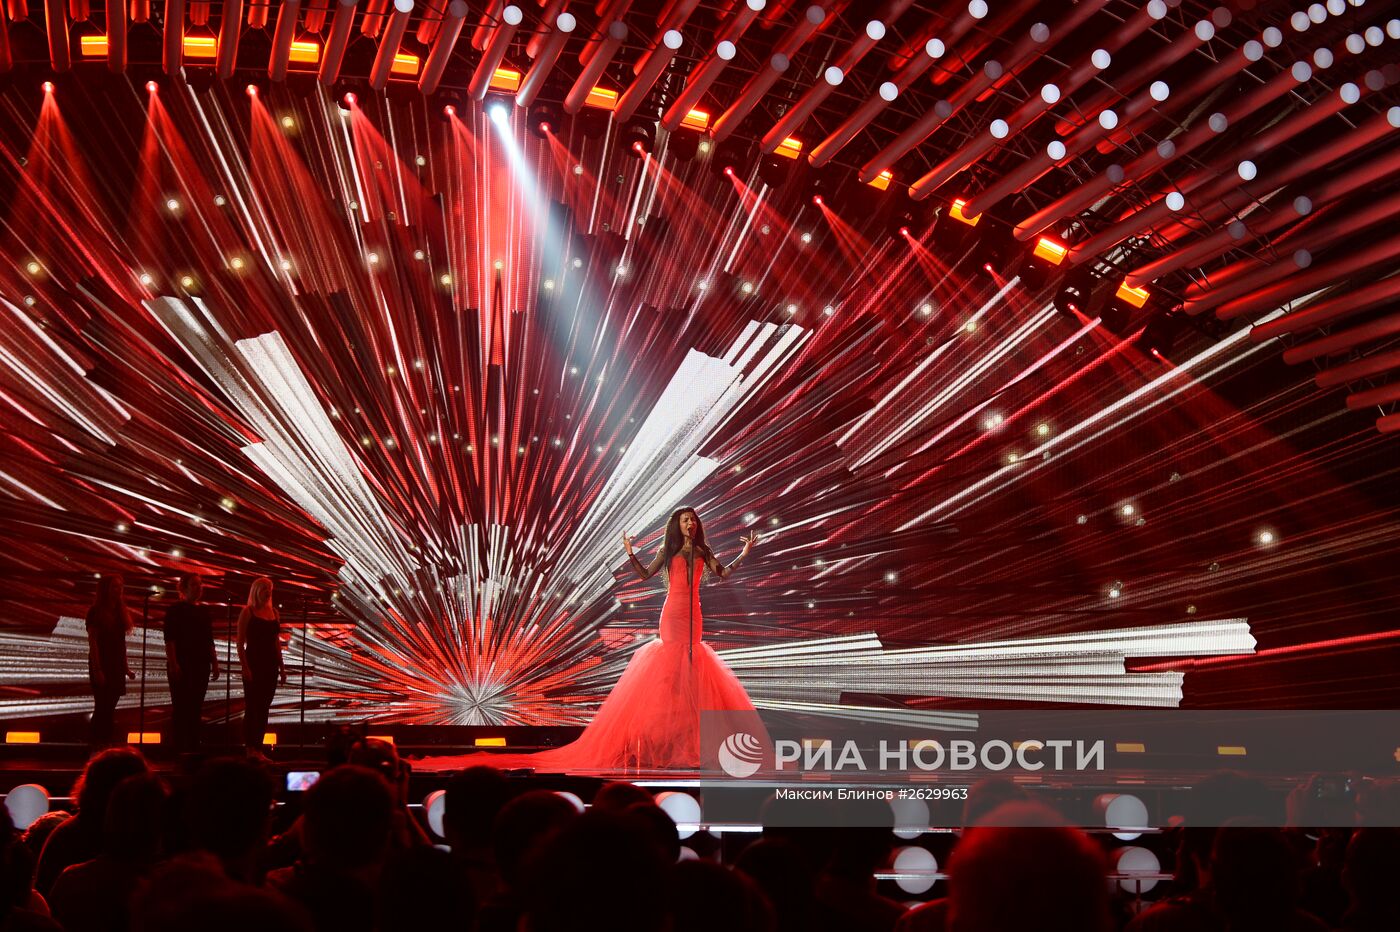 Репетиция финала международного конкурса песни "Евровидение 2015" в Вене